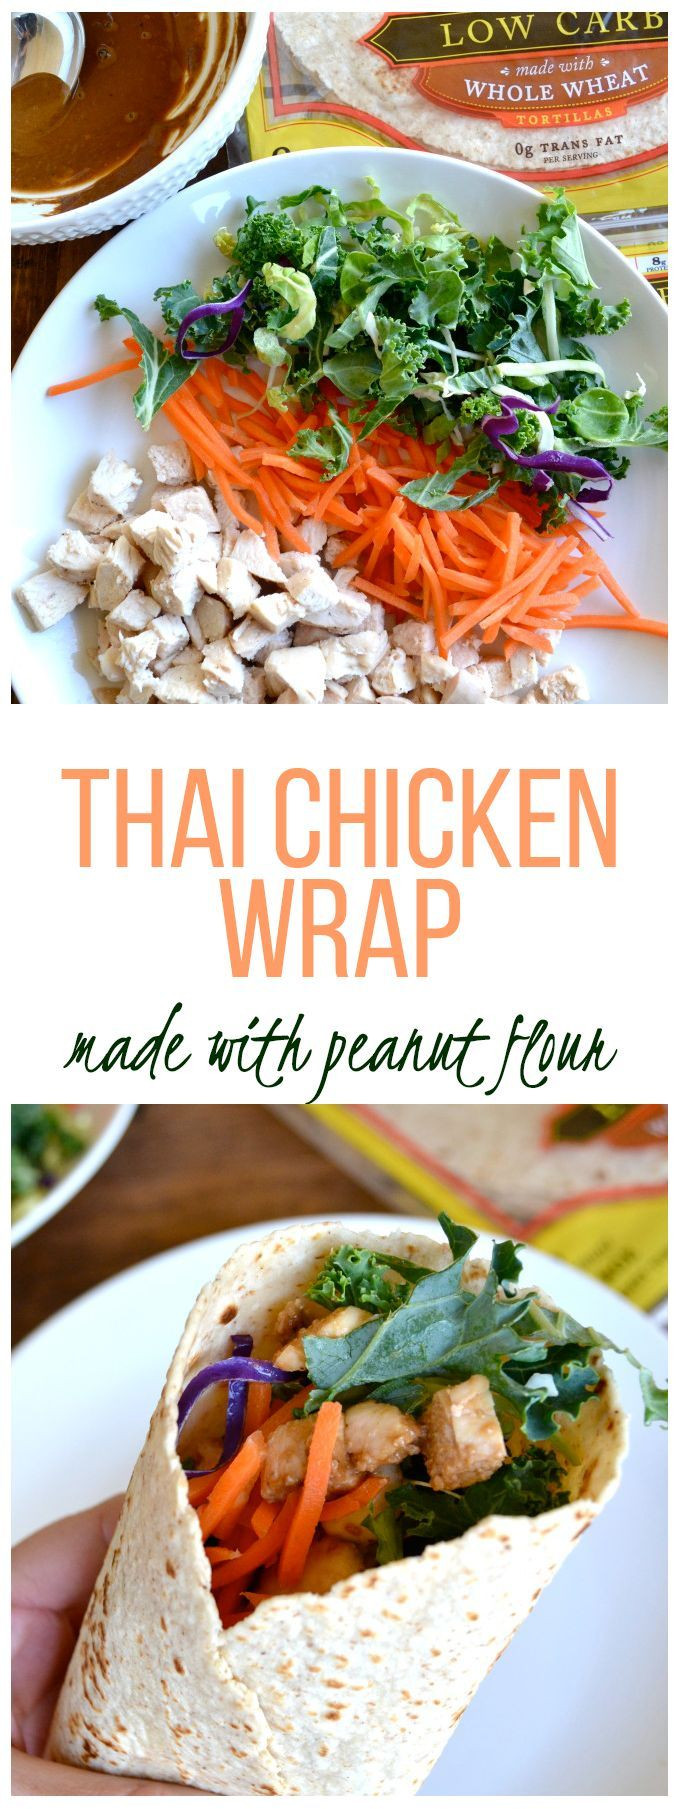 Low Calorie Wraps Recipes
 Low Calorie Thai Chicken Wrap Recipe